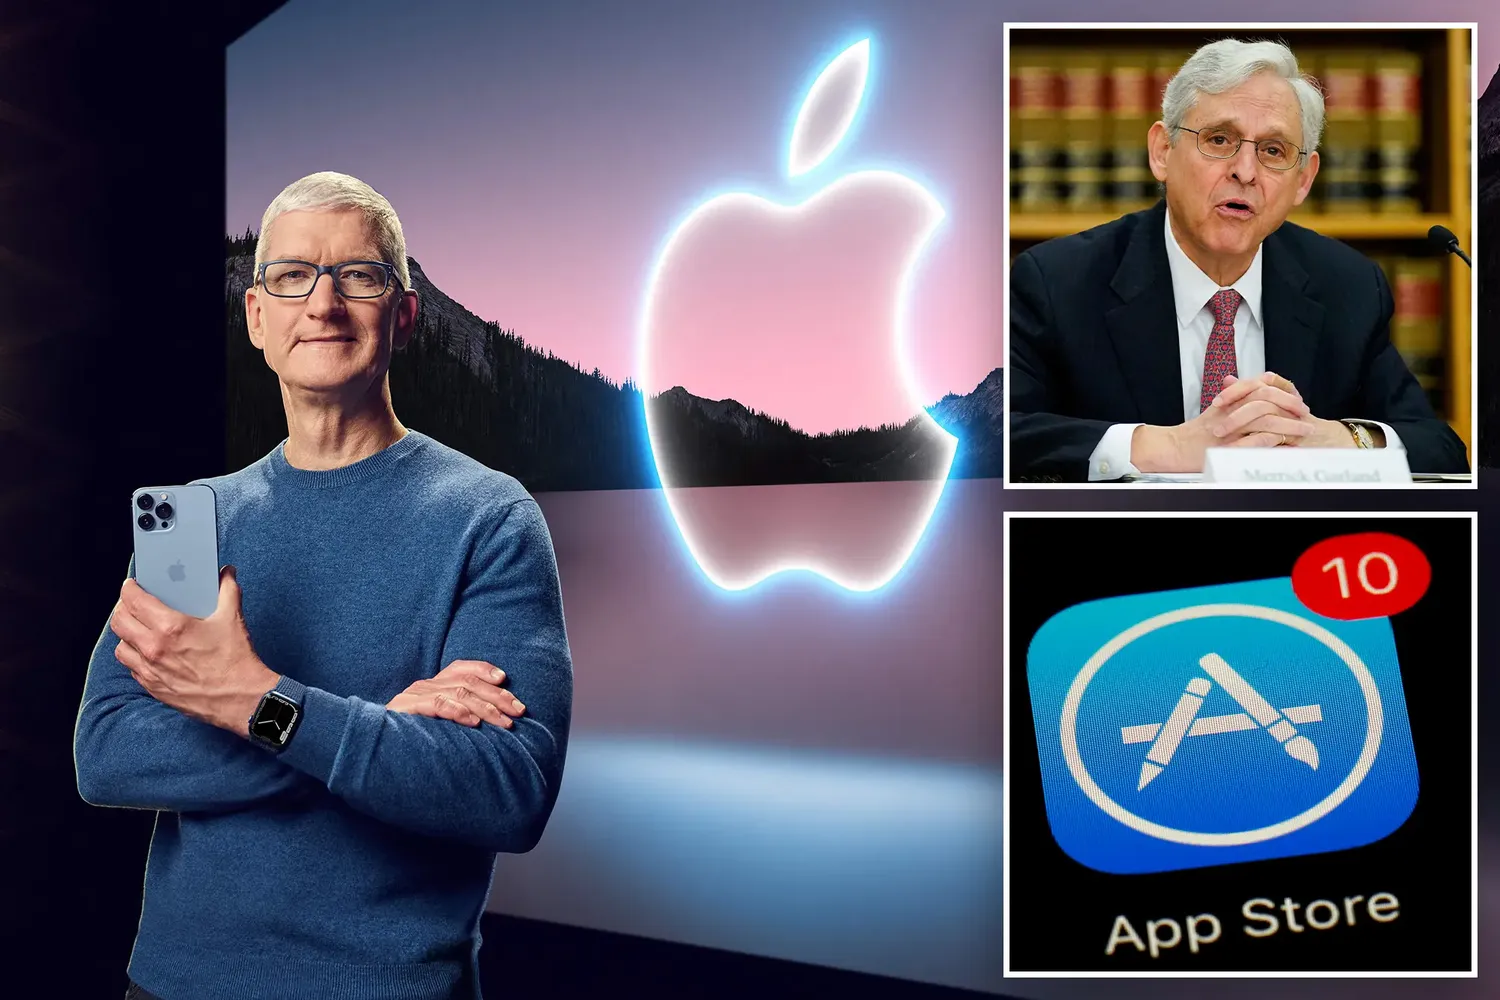 Apple is being sued by DOJ in Antitrust Case